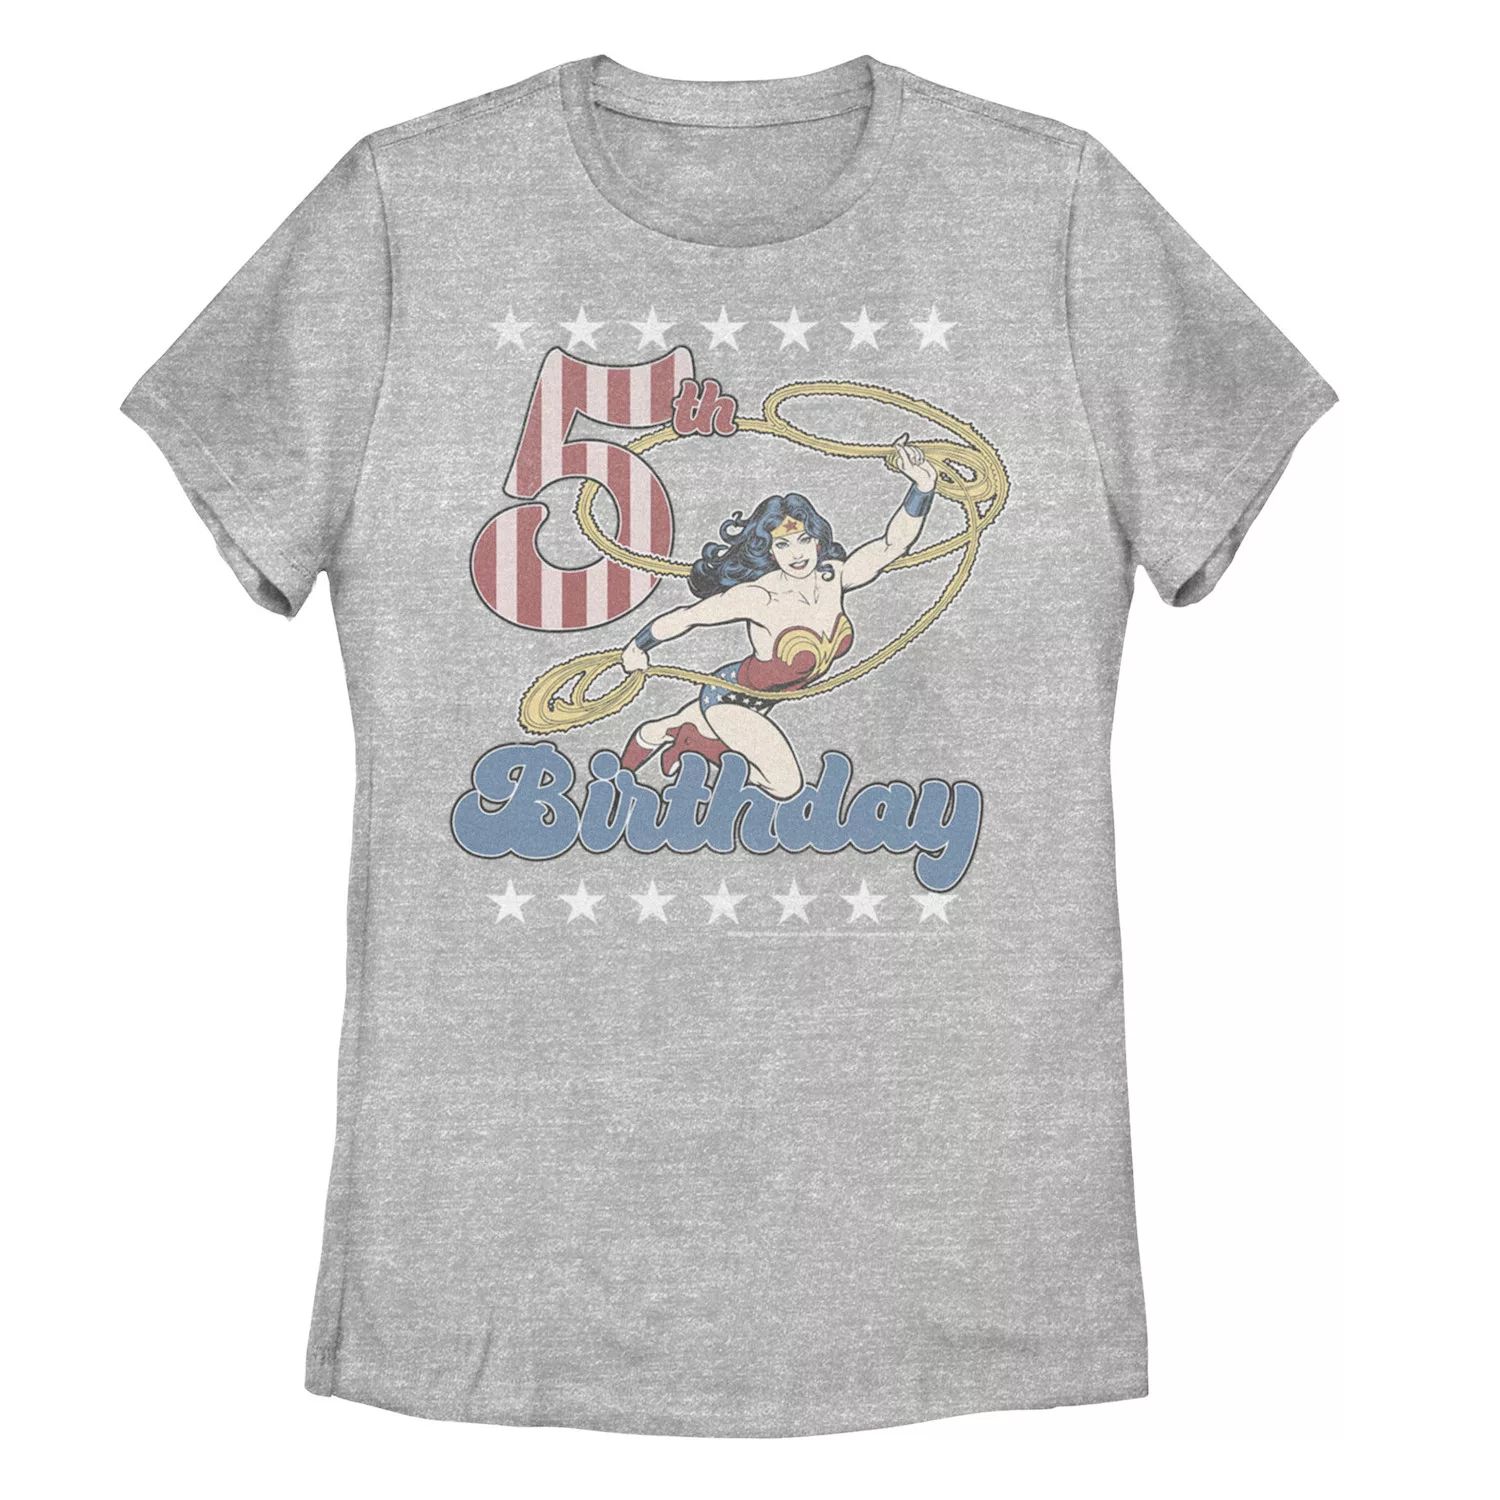 Детская футболка DC Comics «Чудо-женщина с лассо» в честь 5-летия Licensed Character детская футболка с рисунком чудо женщина dc comics licensed character